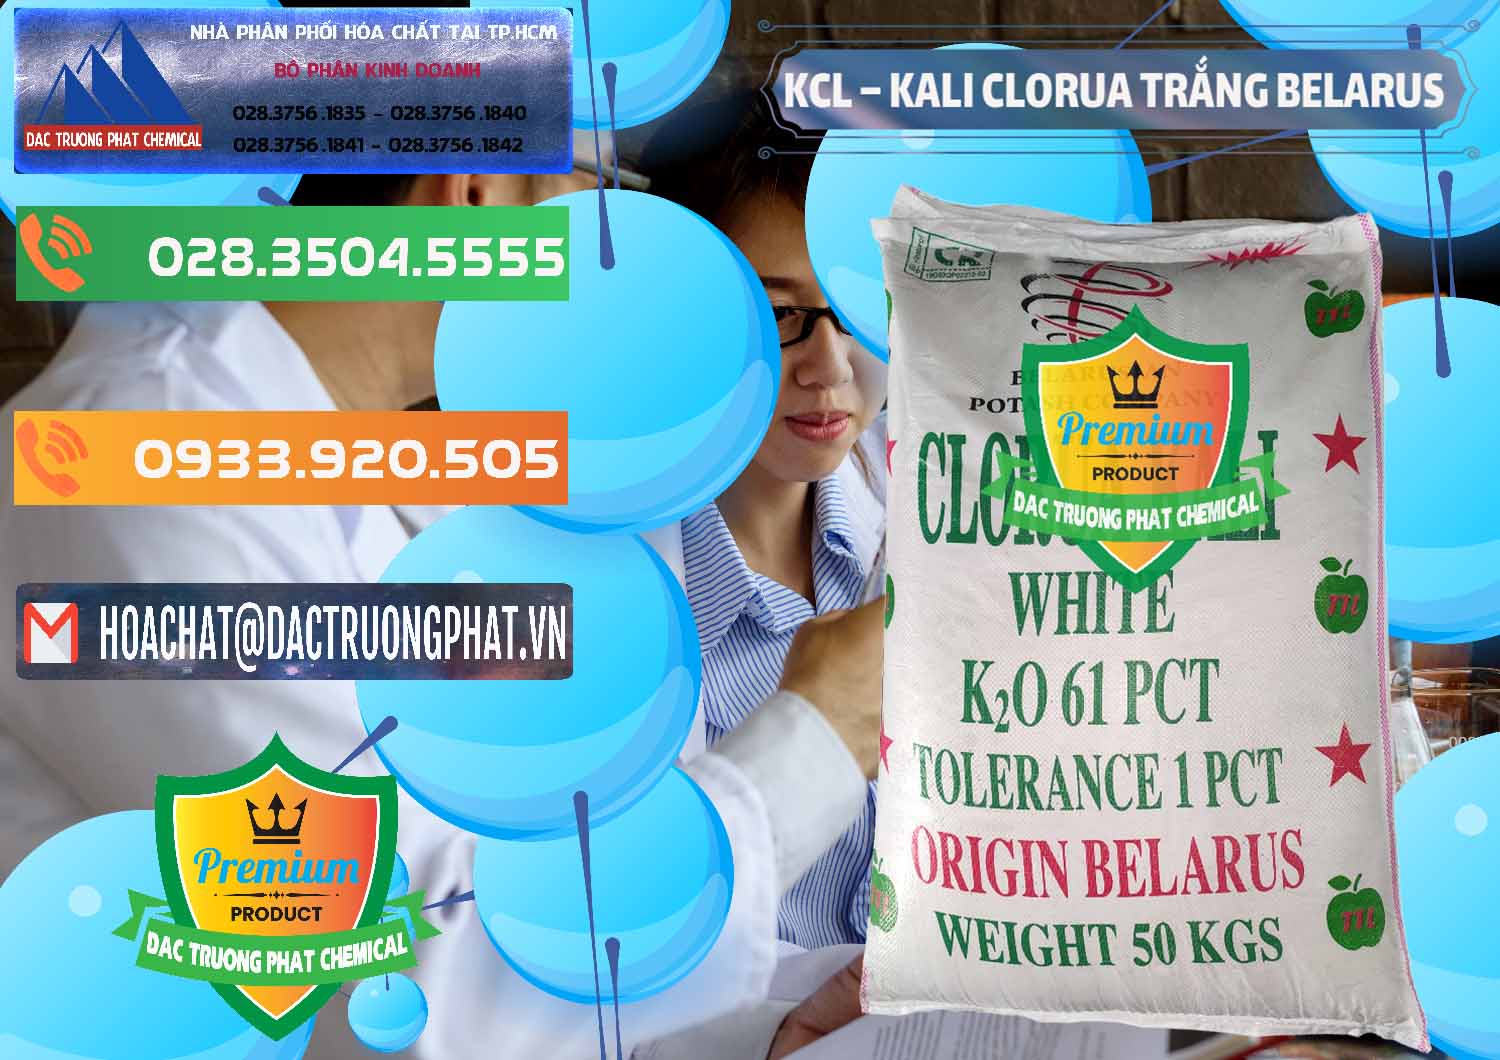 Nơi bán KCL – Kali Clorua Trắng Belarus - 0085 - Công ty chuyên nhập khẩu _ phân phối hóa chất tại TP.HCM - hoachatxulynuoc.com.vn